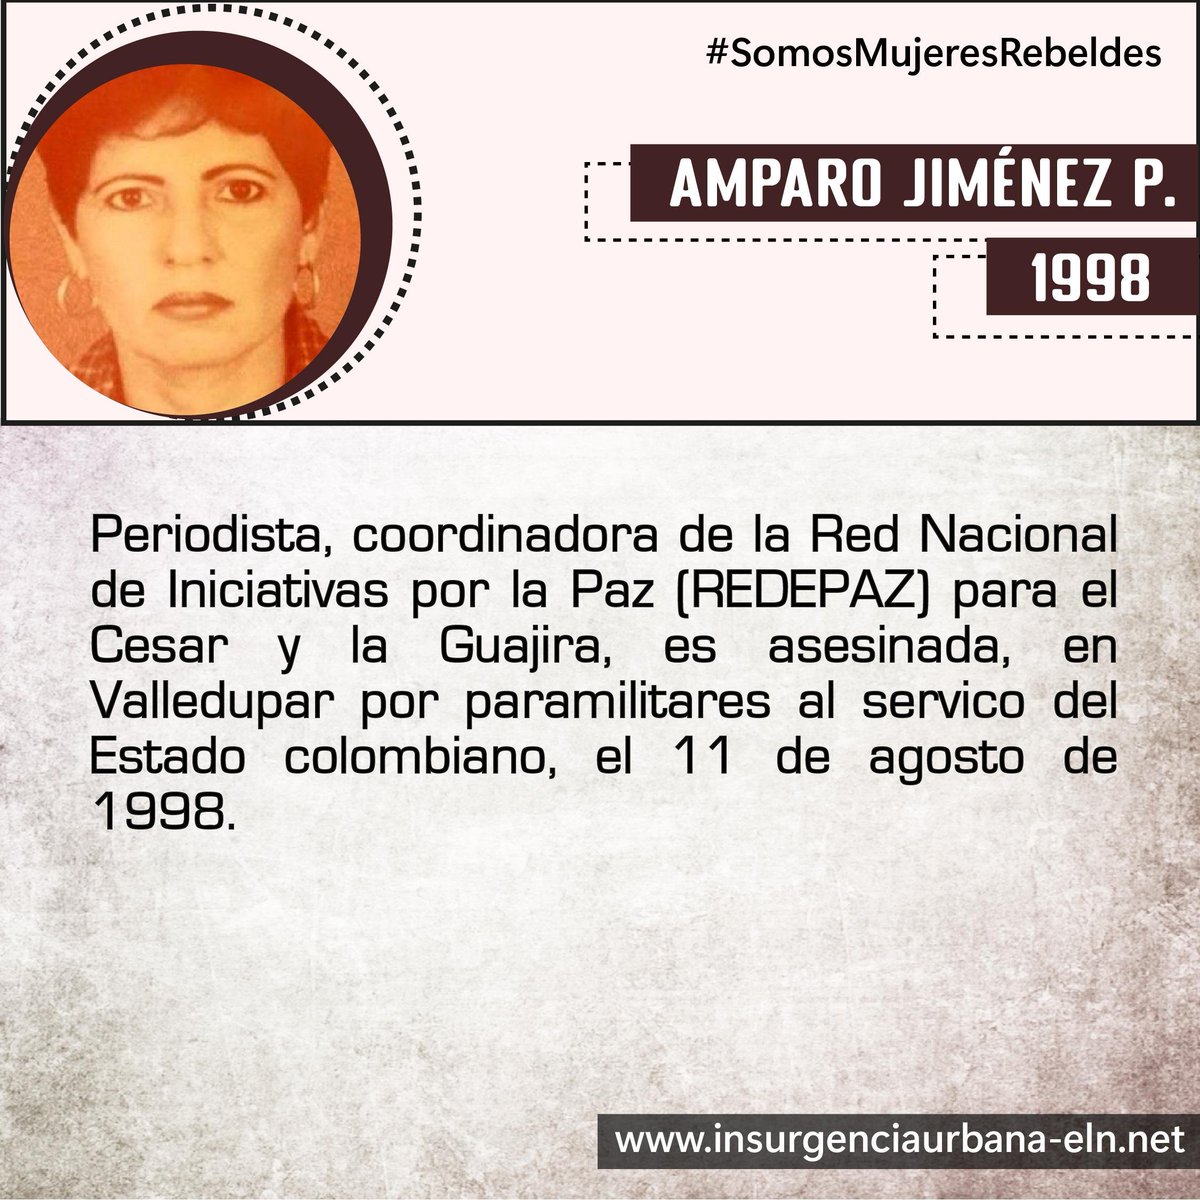 #SomosMujeresRebeldes AMPARO JIMÉNEZ 🕊️ Periodista, asesinada por paramilitares #SiempreJuntoAlPueblo #InsurgenciaUrbana #ELN60Años